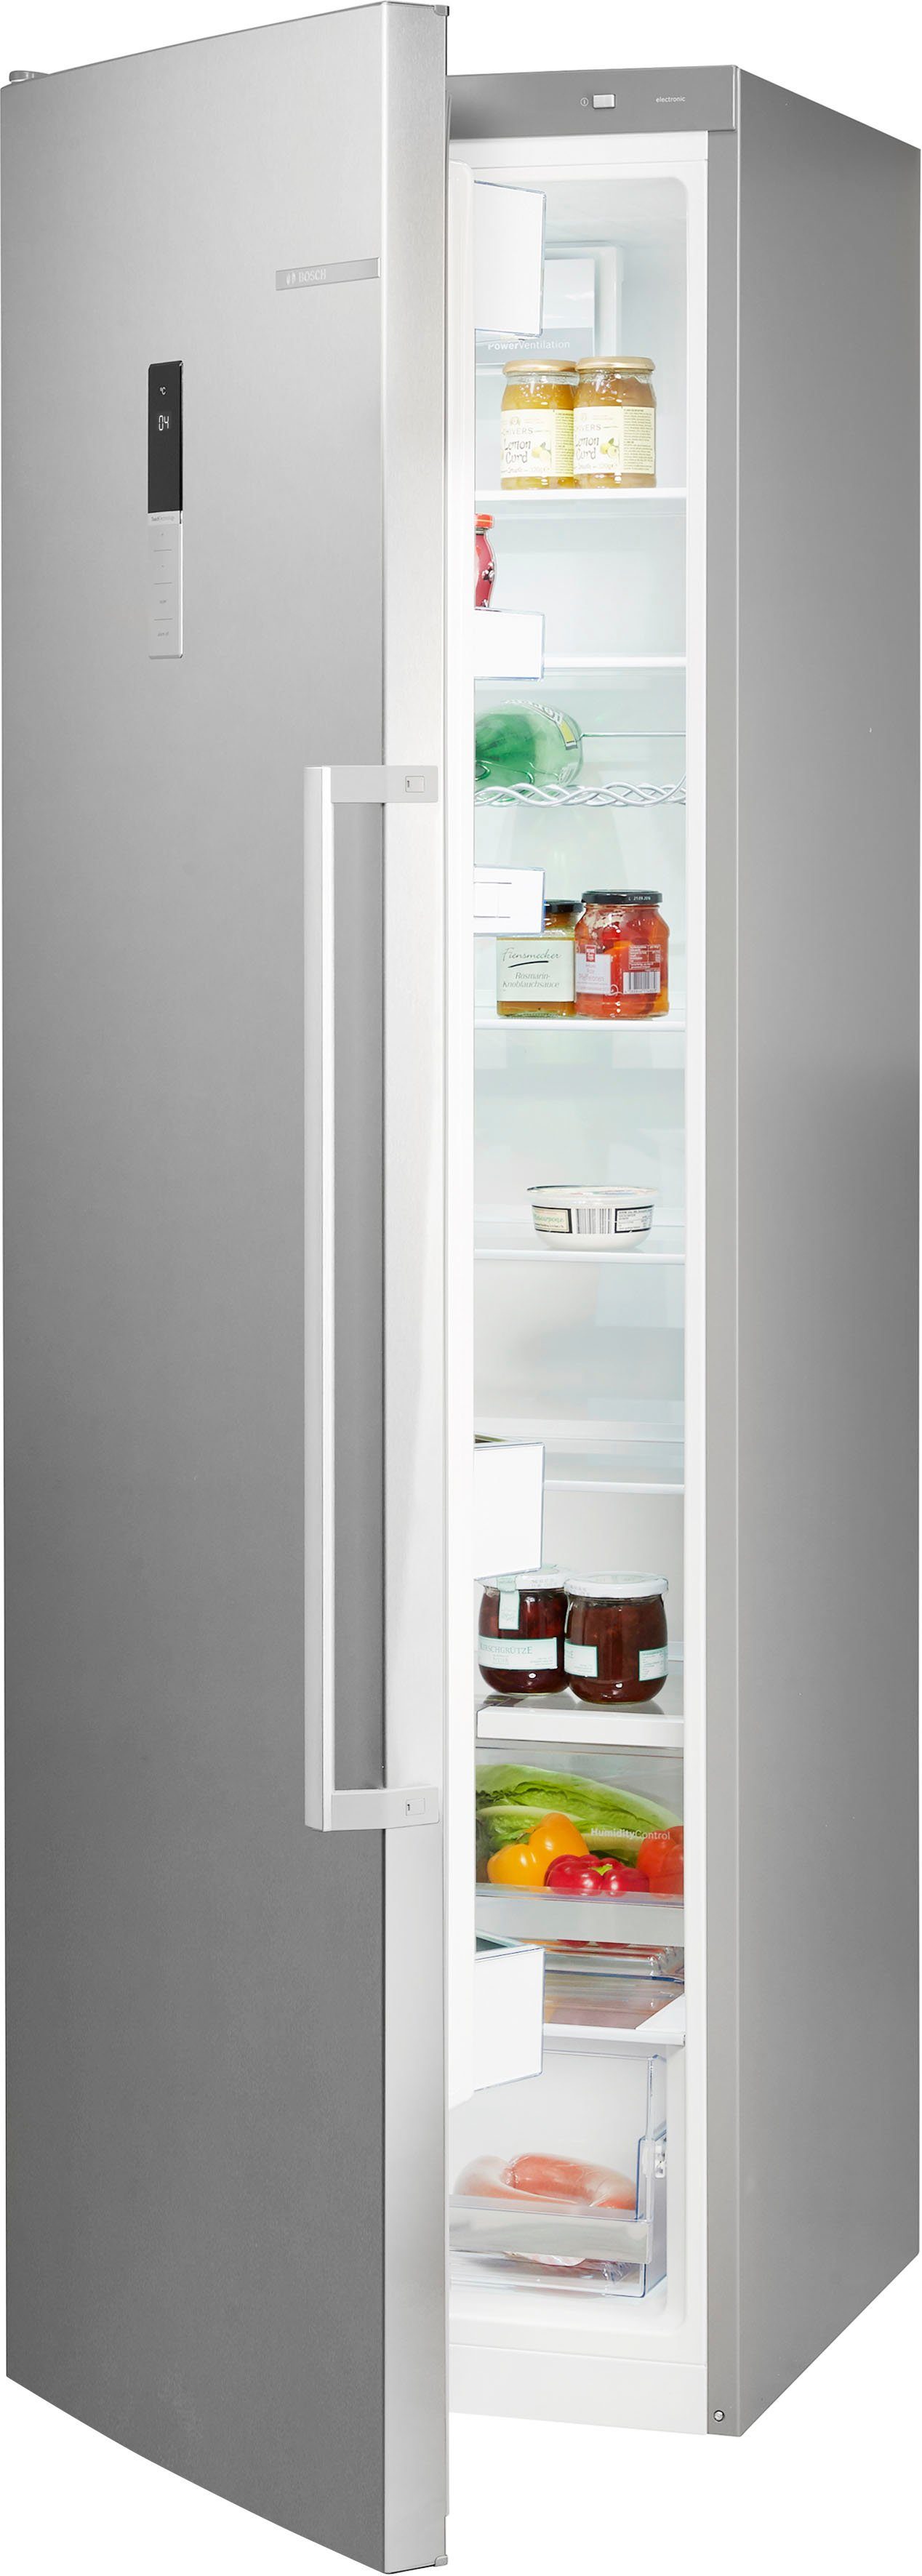 BOSCH Kühlschrank 6 KSV36BIEP, 186 cm hoch, 60 cm breit